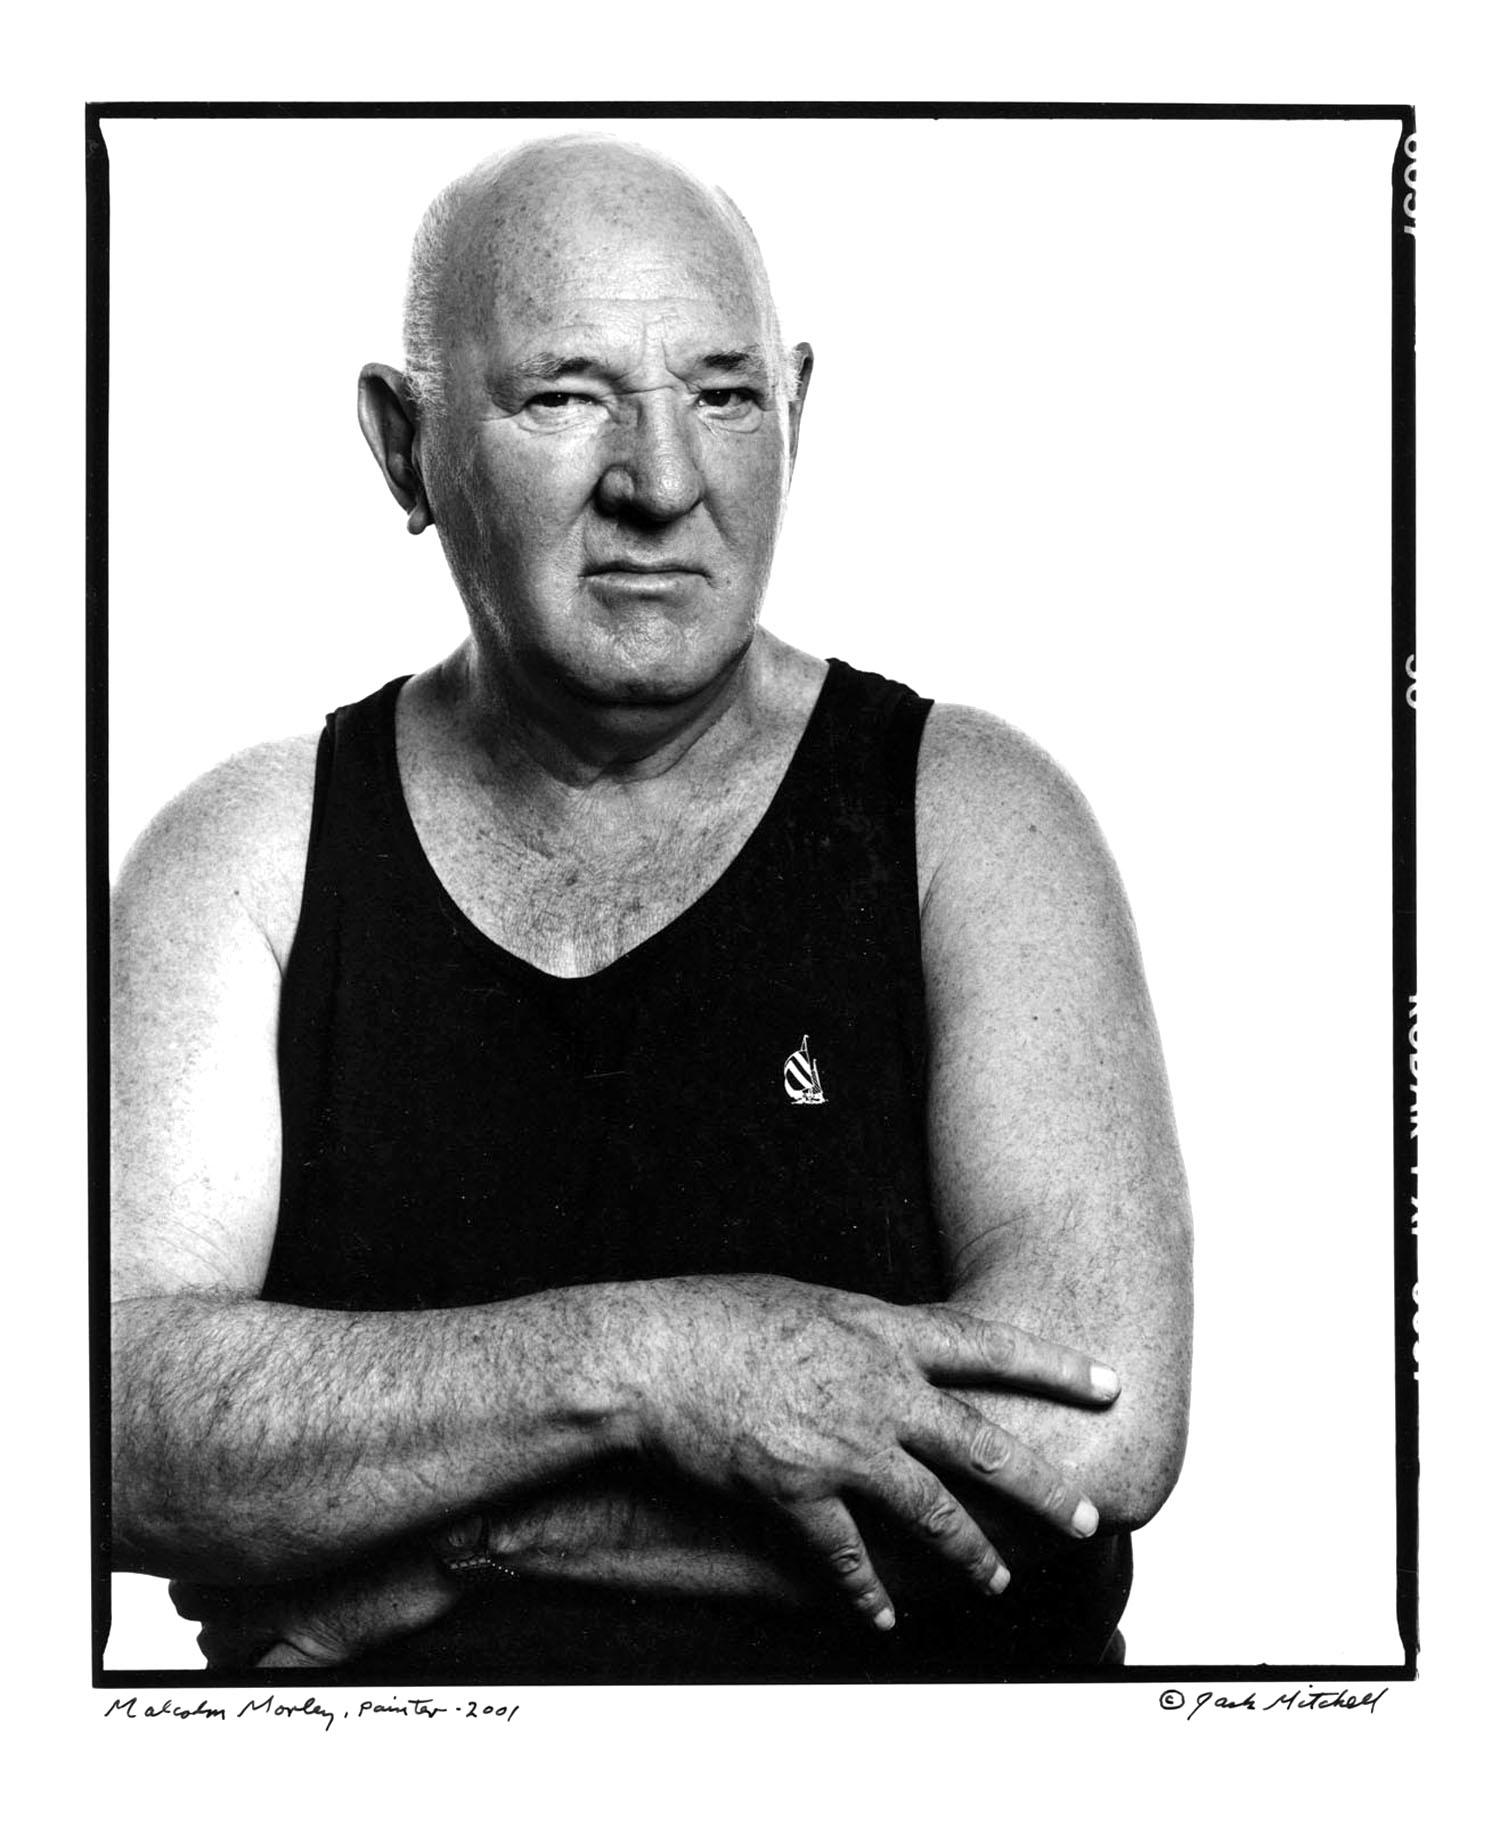 11 x 14" alte Silbergelatinefotografie des britisch-amerikanischen Künstlers Malcolm Morley, 2001. Signiert auf der Vorderseite des Drucks von Jack Mitchell. Kommt direkt aus dem Jack Mitchell Archiv mit einem Echtheitszertifikat.  

Jack Mitchells